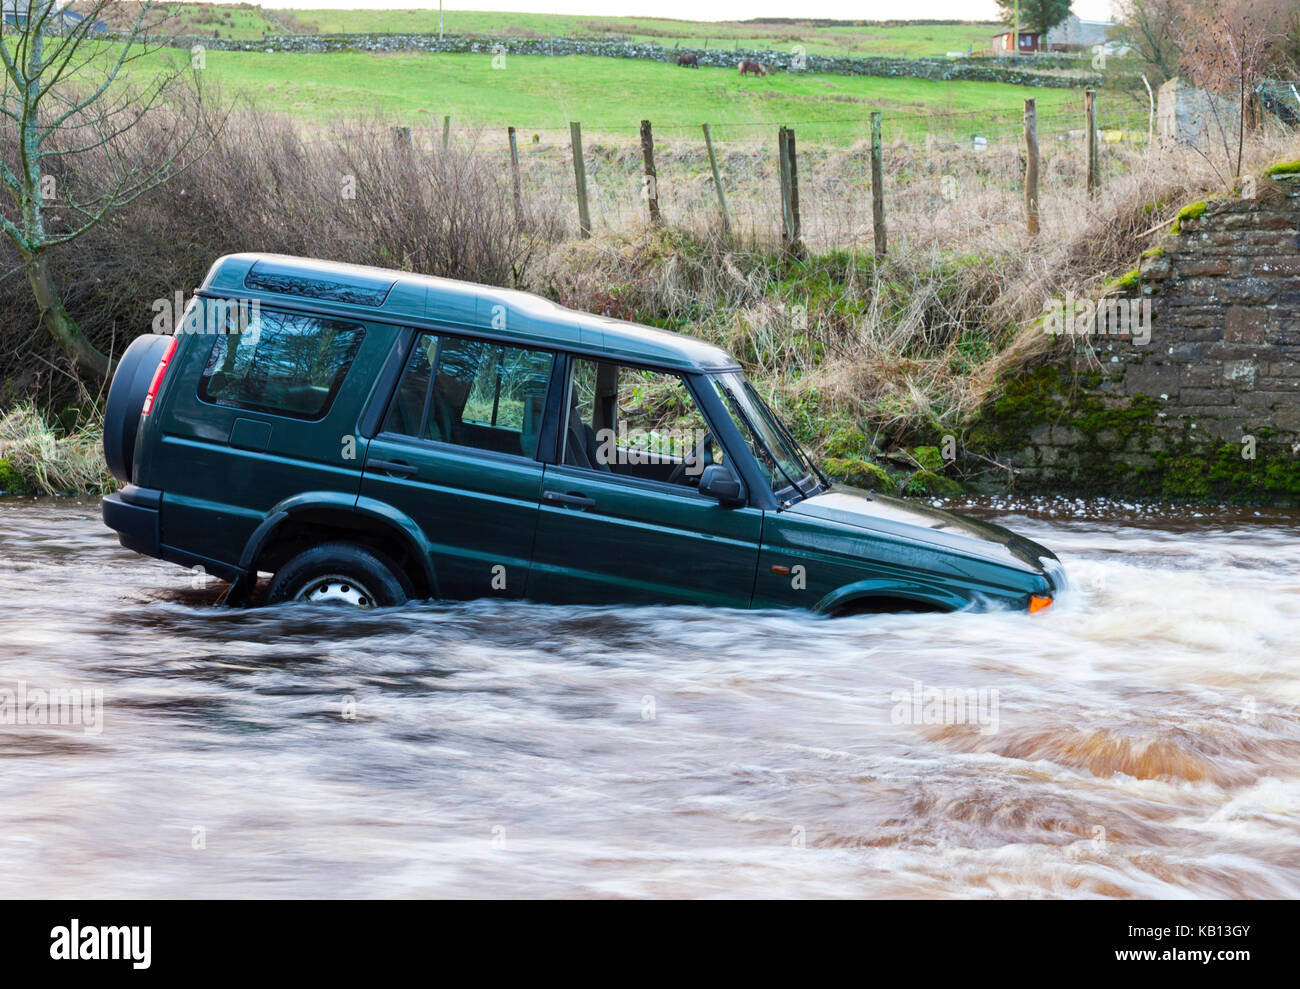 Un véhicule 4x4 emportés par les crues en essayant de traverser un gué sur la rivière l'usure dans le Westgate, Weardale, comté de Durham au Royaume-Uni. Le conducteur a été sauvé Banque D'Images